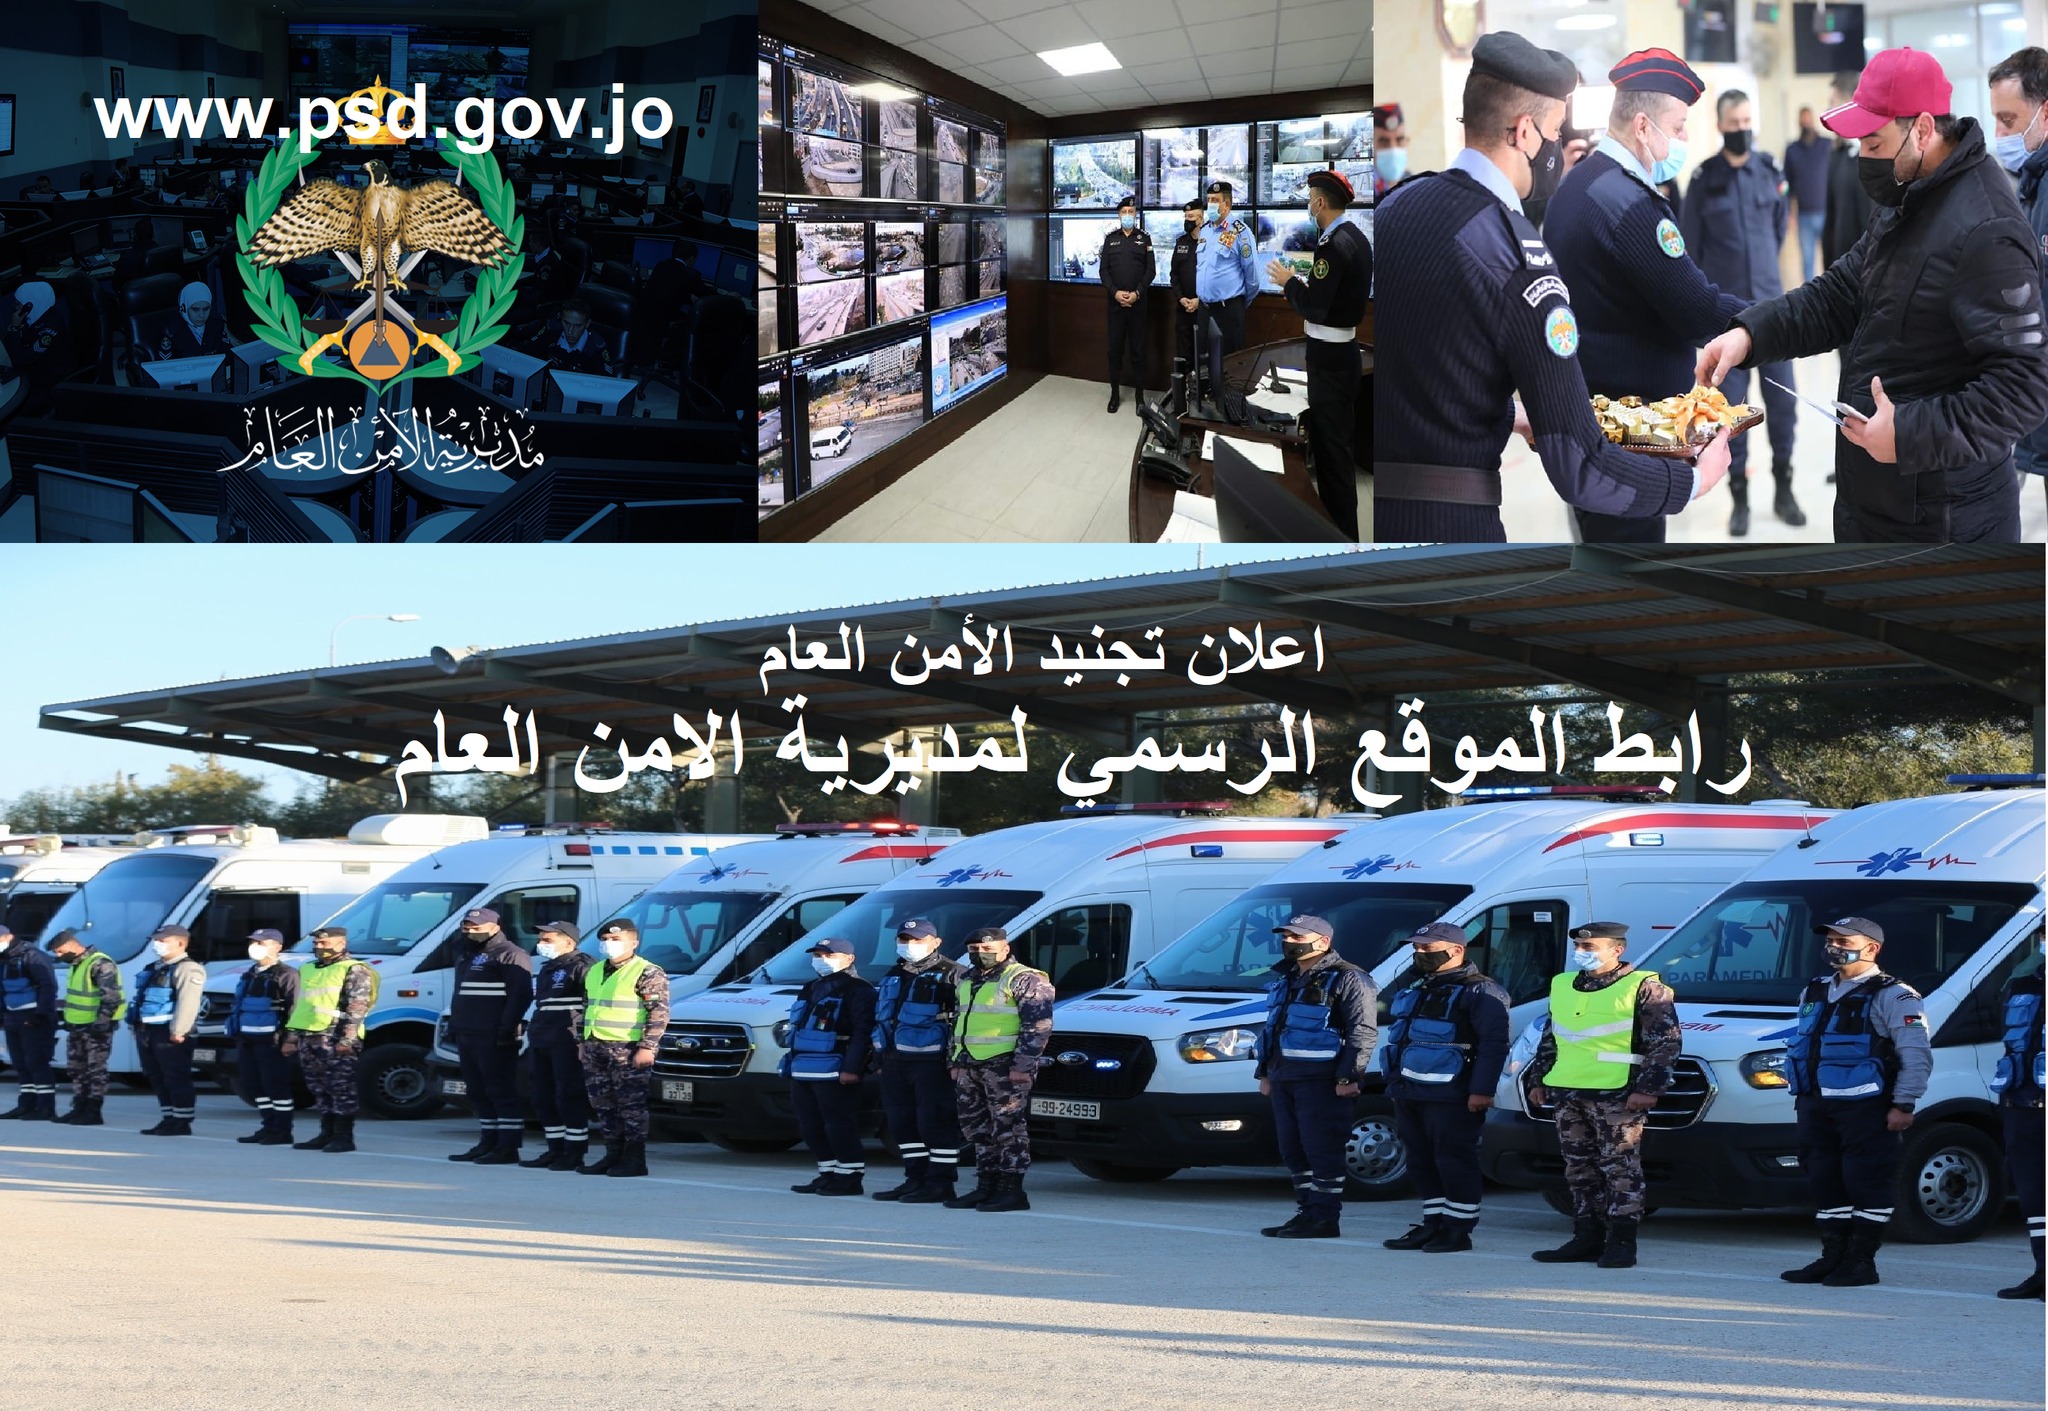 نظام خدمات التجنيد الإلكتروني 2022 الأردن www.psd.gov.jo رابط الموقع الرسمي مديرية الامن العام